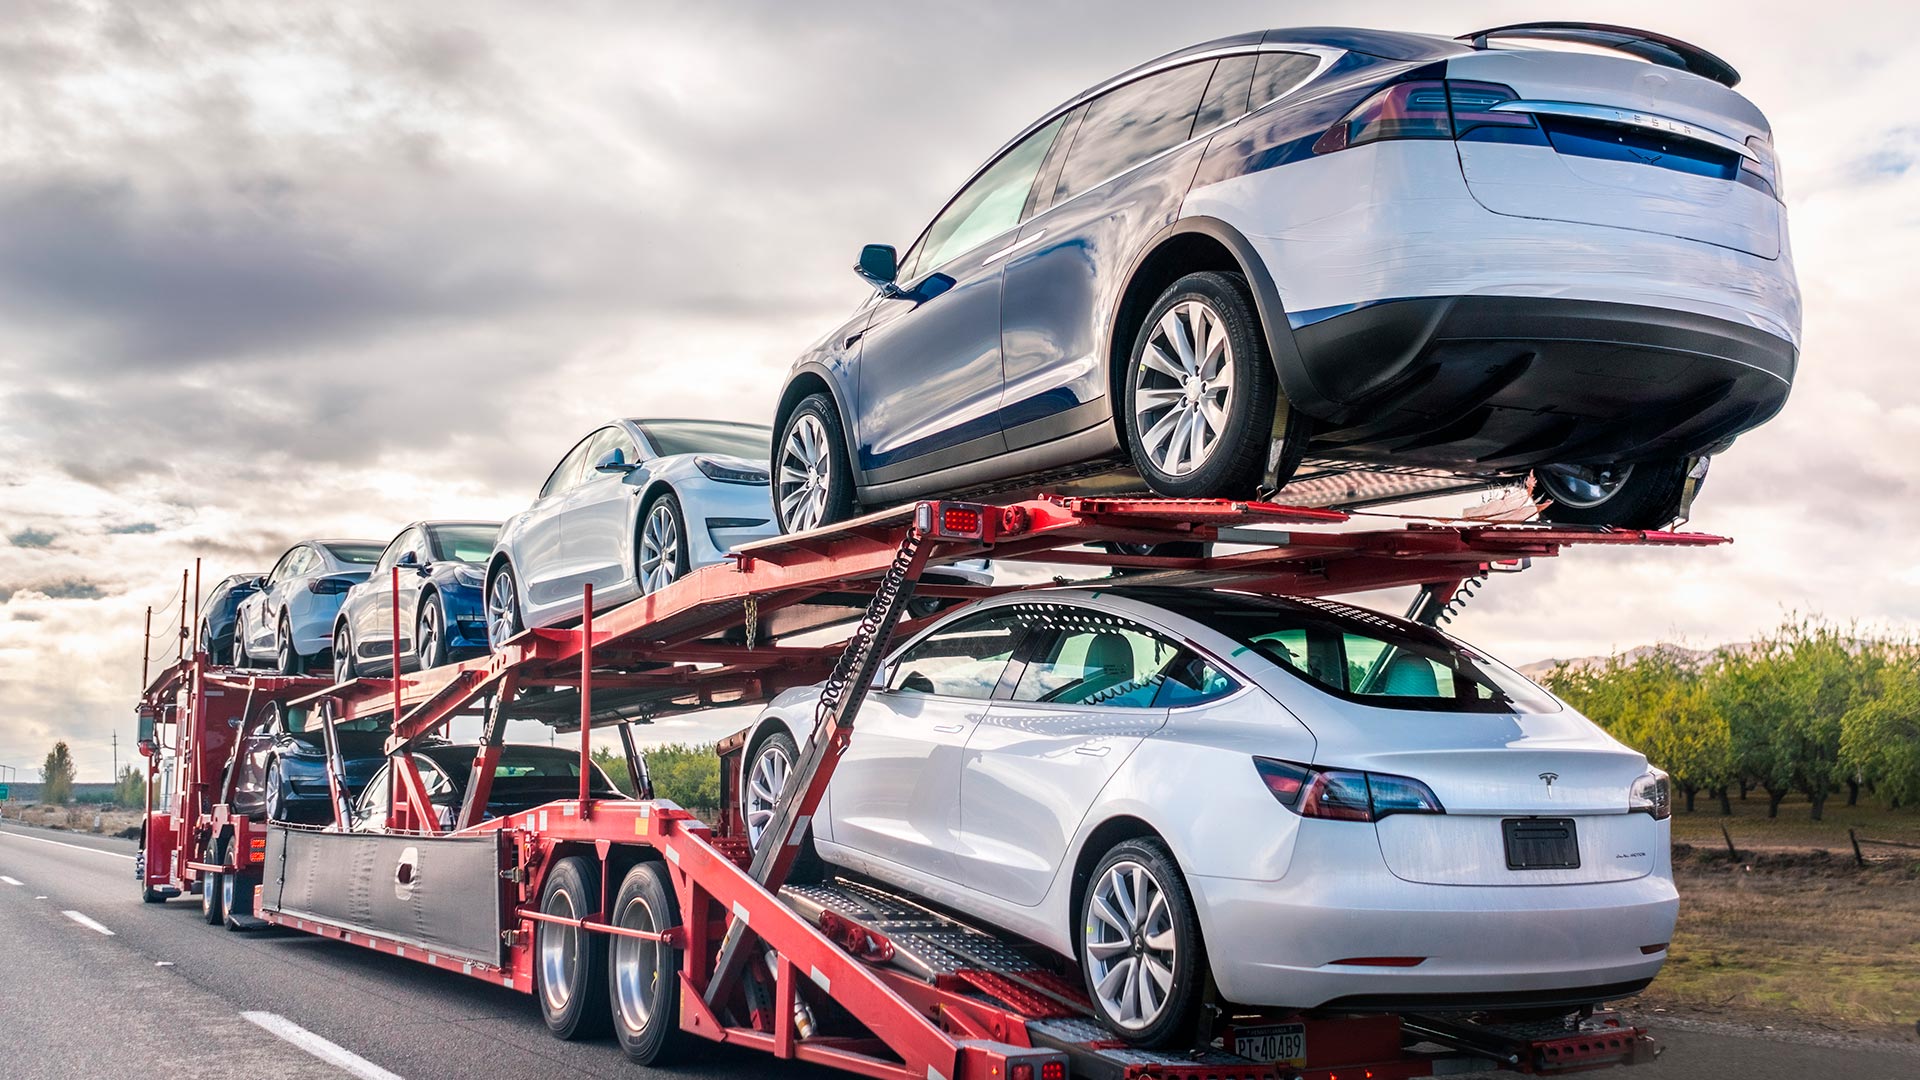 Automóviles y maquinaria: minimiza el riesgo en el transporte de mercancía